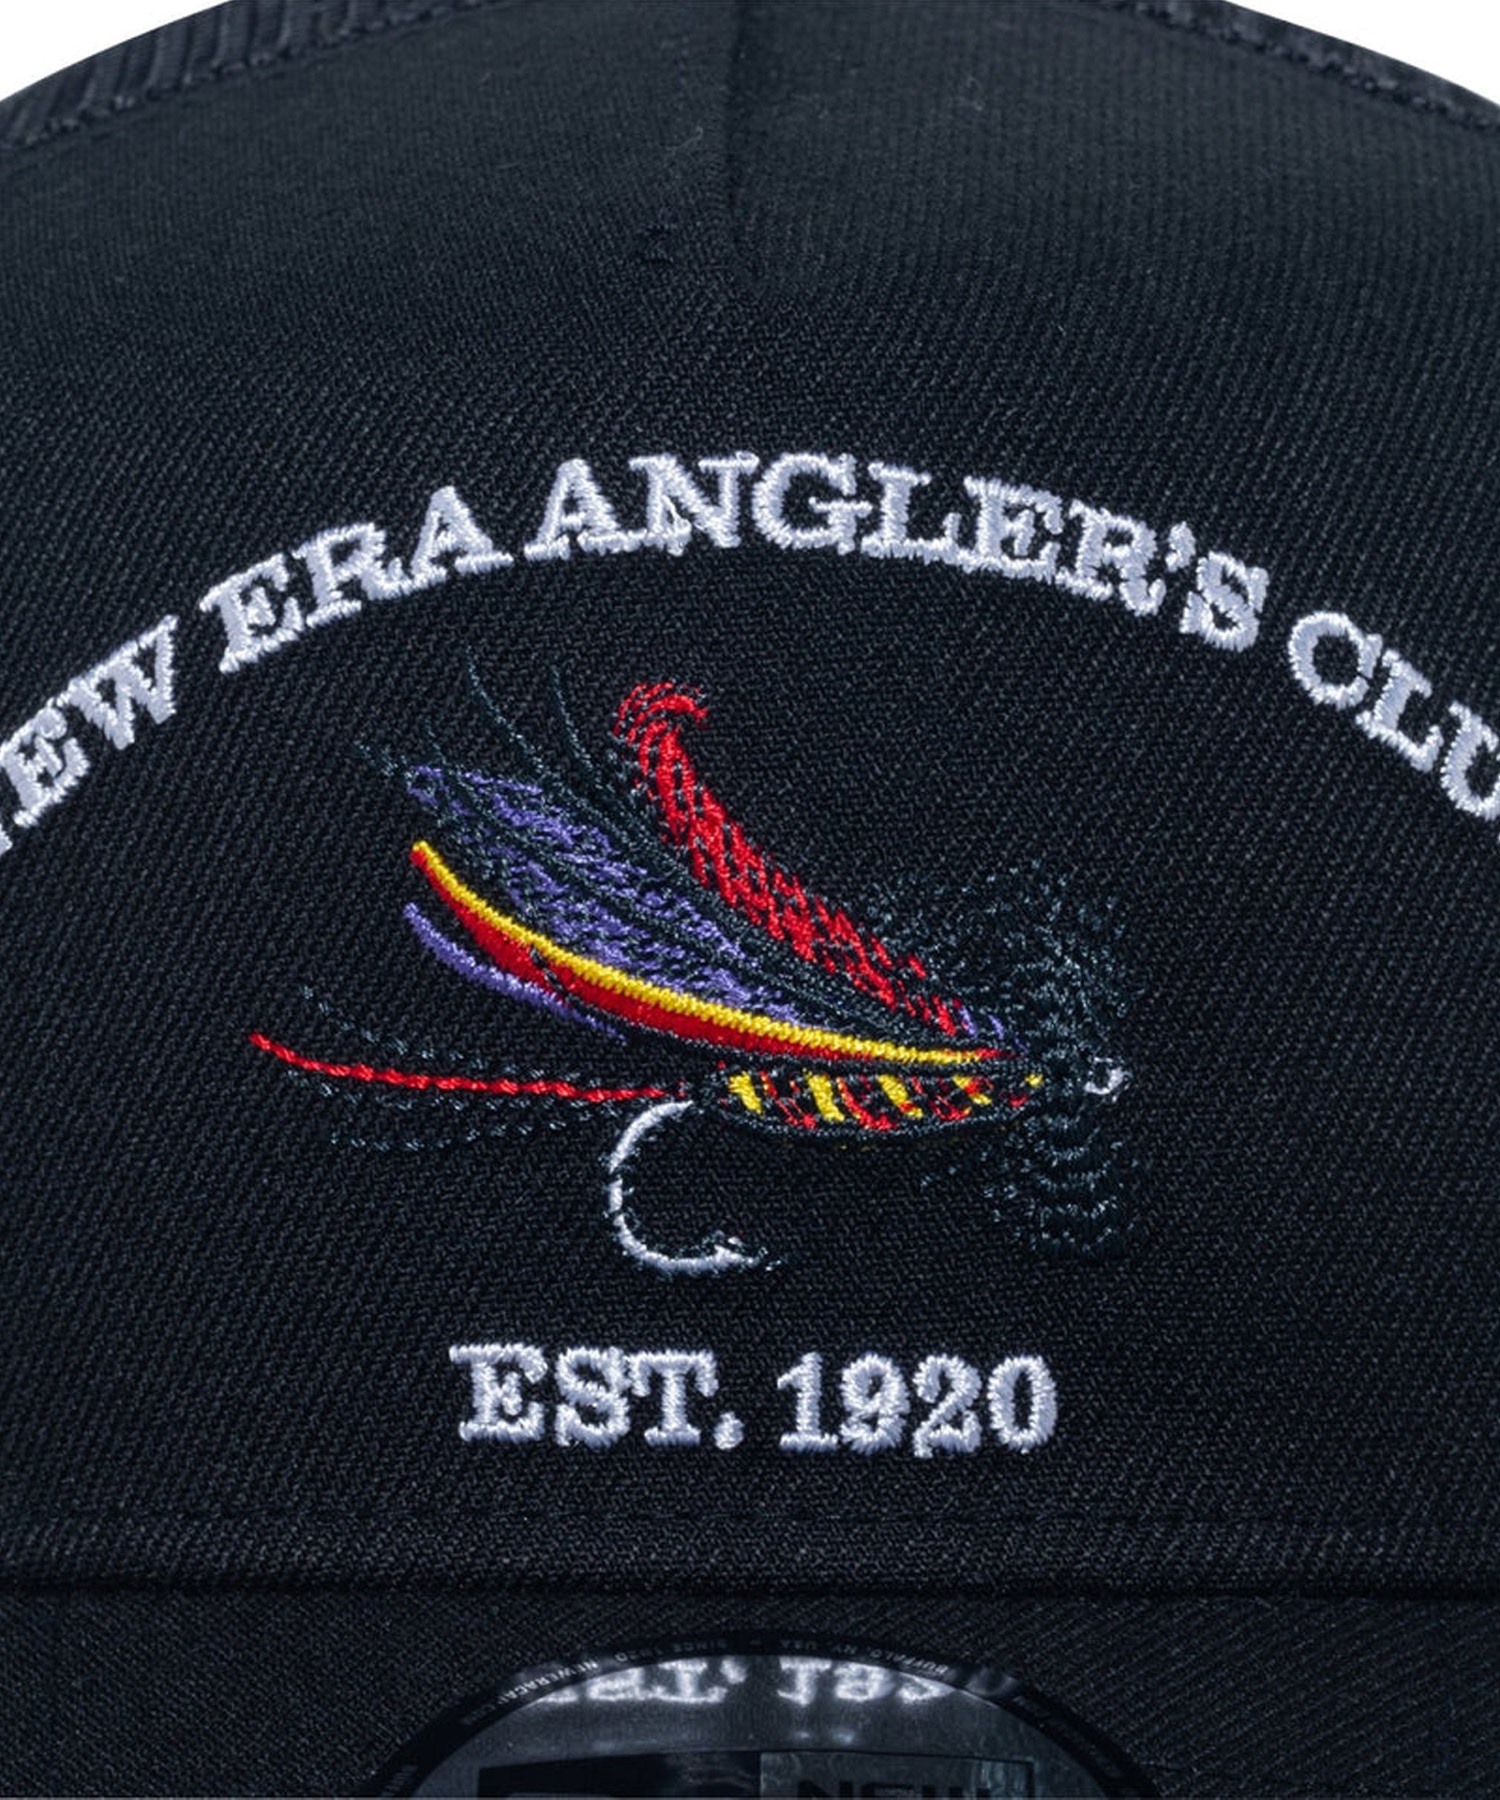 NEW ERA/ニューエラ 9FORTY A-Frame トラッカー New Era Angler's Club フライ ブラック キャップ 帽子 14110110(BLK-FREE)